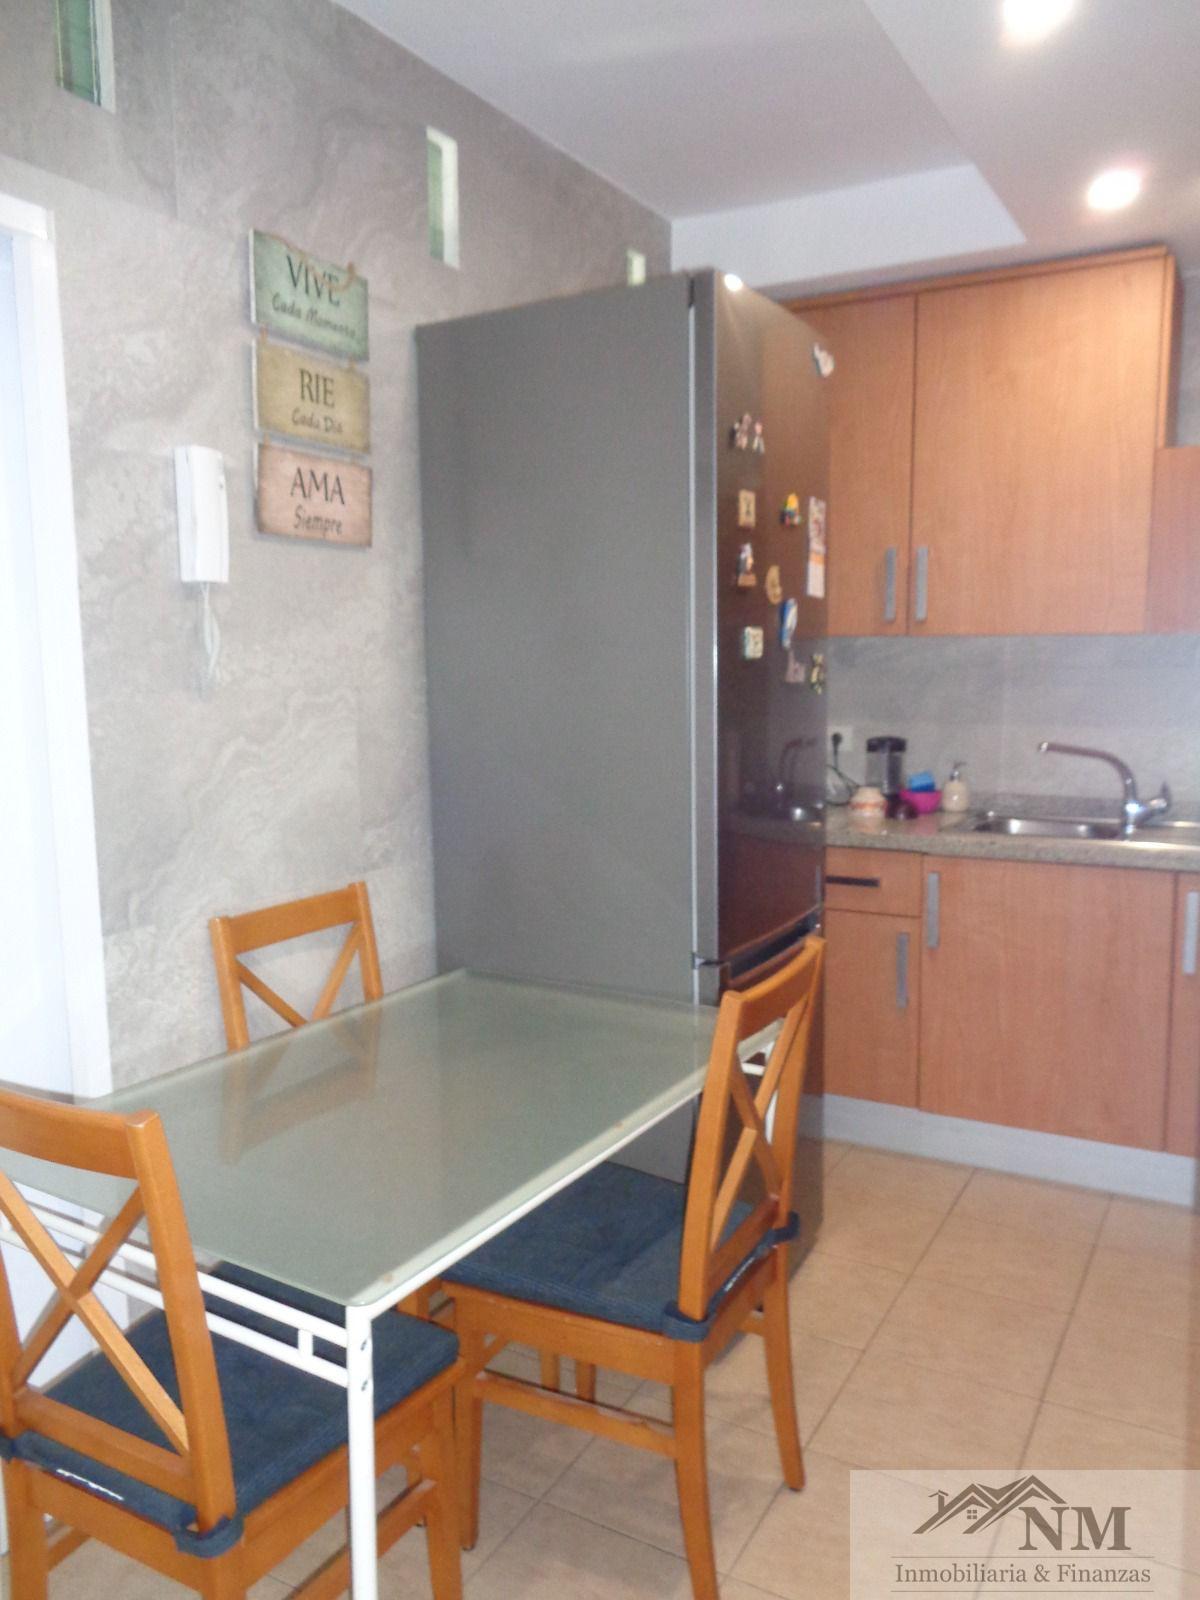 For sale of apartment in Granadilla de Abona